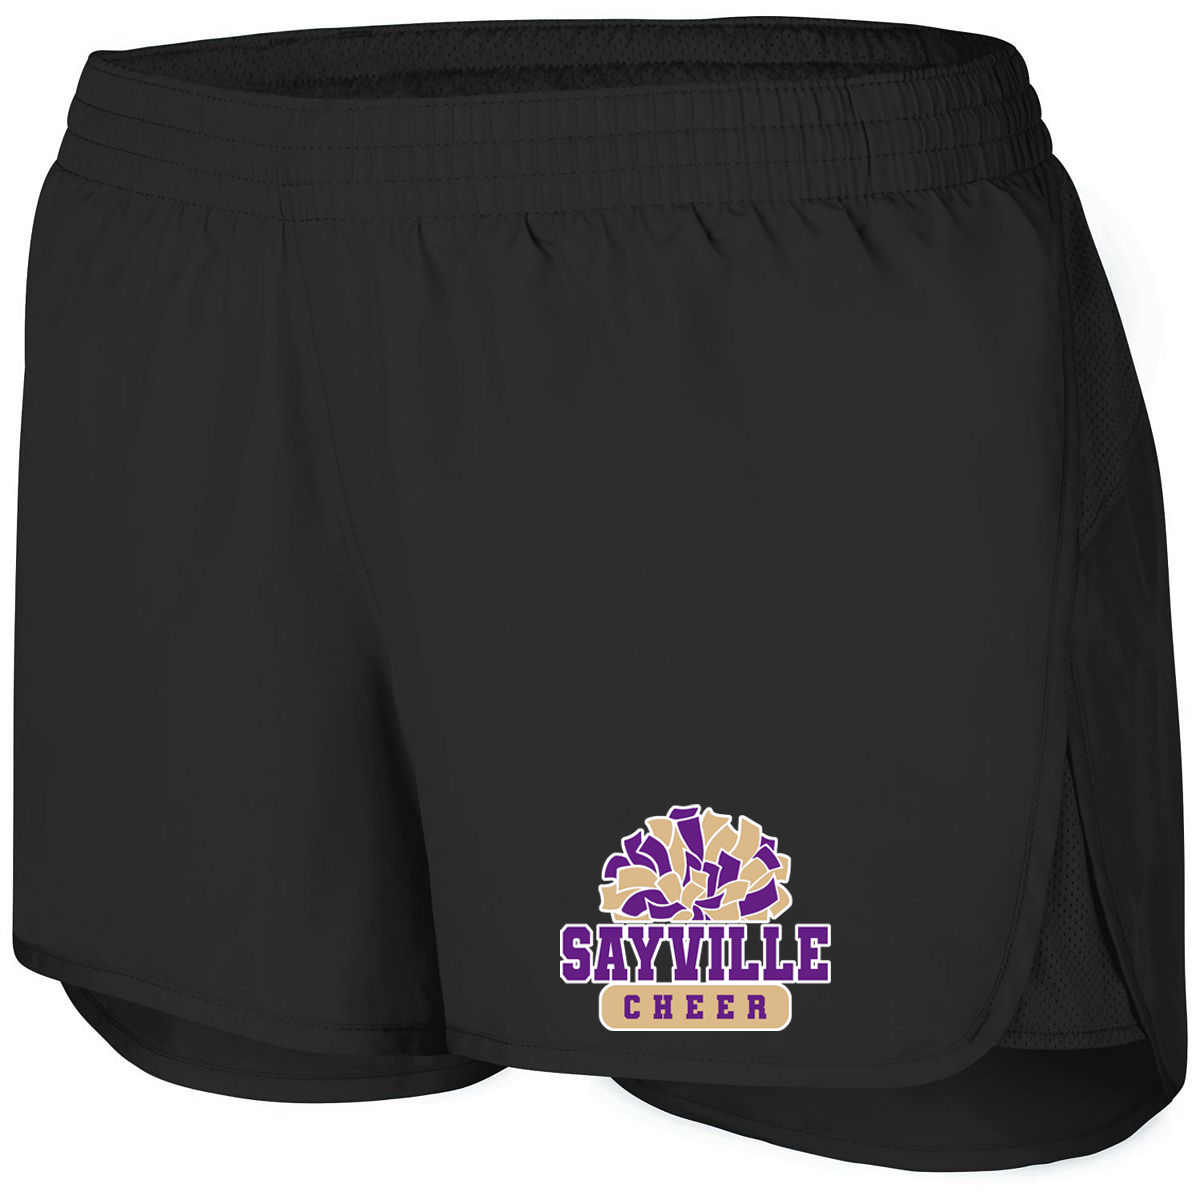 Sayville Cheer Women's Wayfarer Shorts